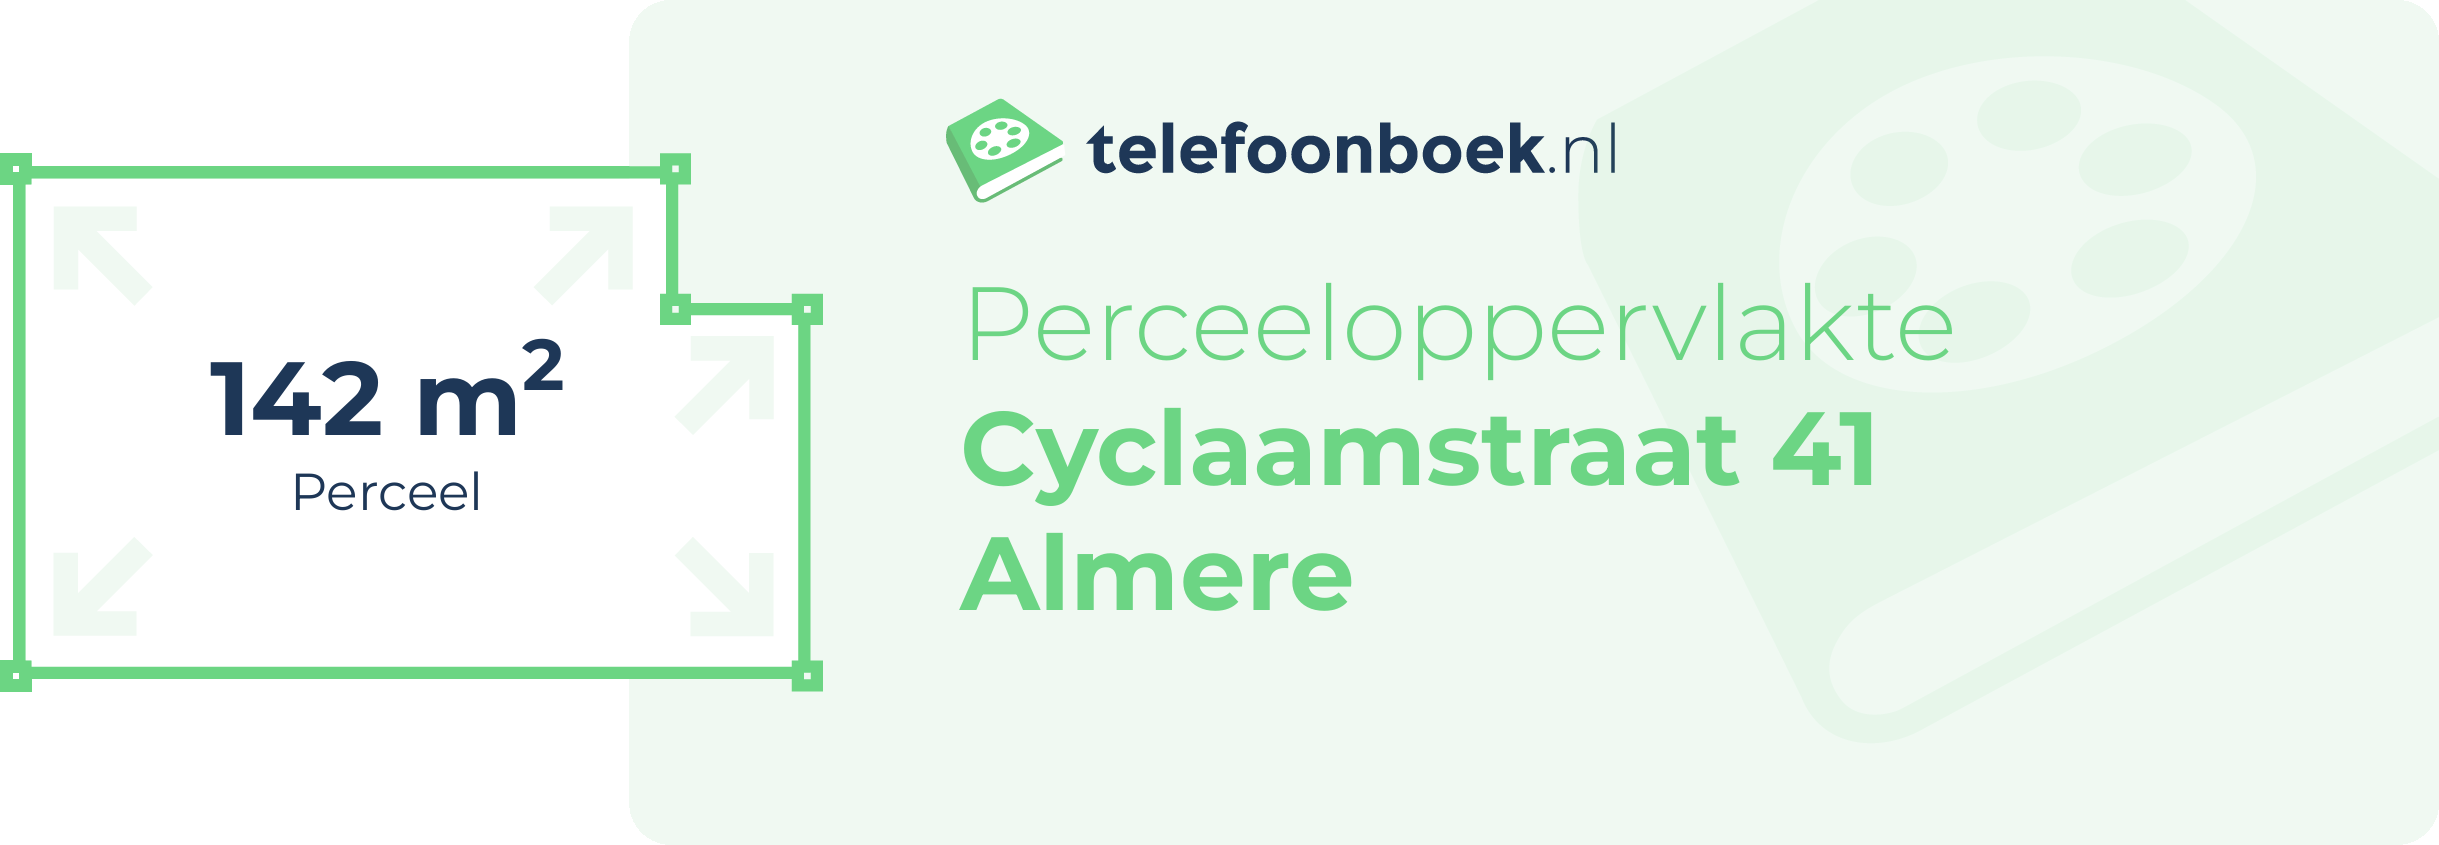 Perceeloppervlakte Cyclaamstraat 41 Almere